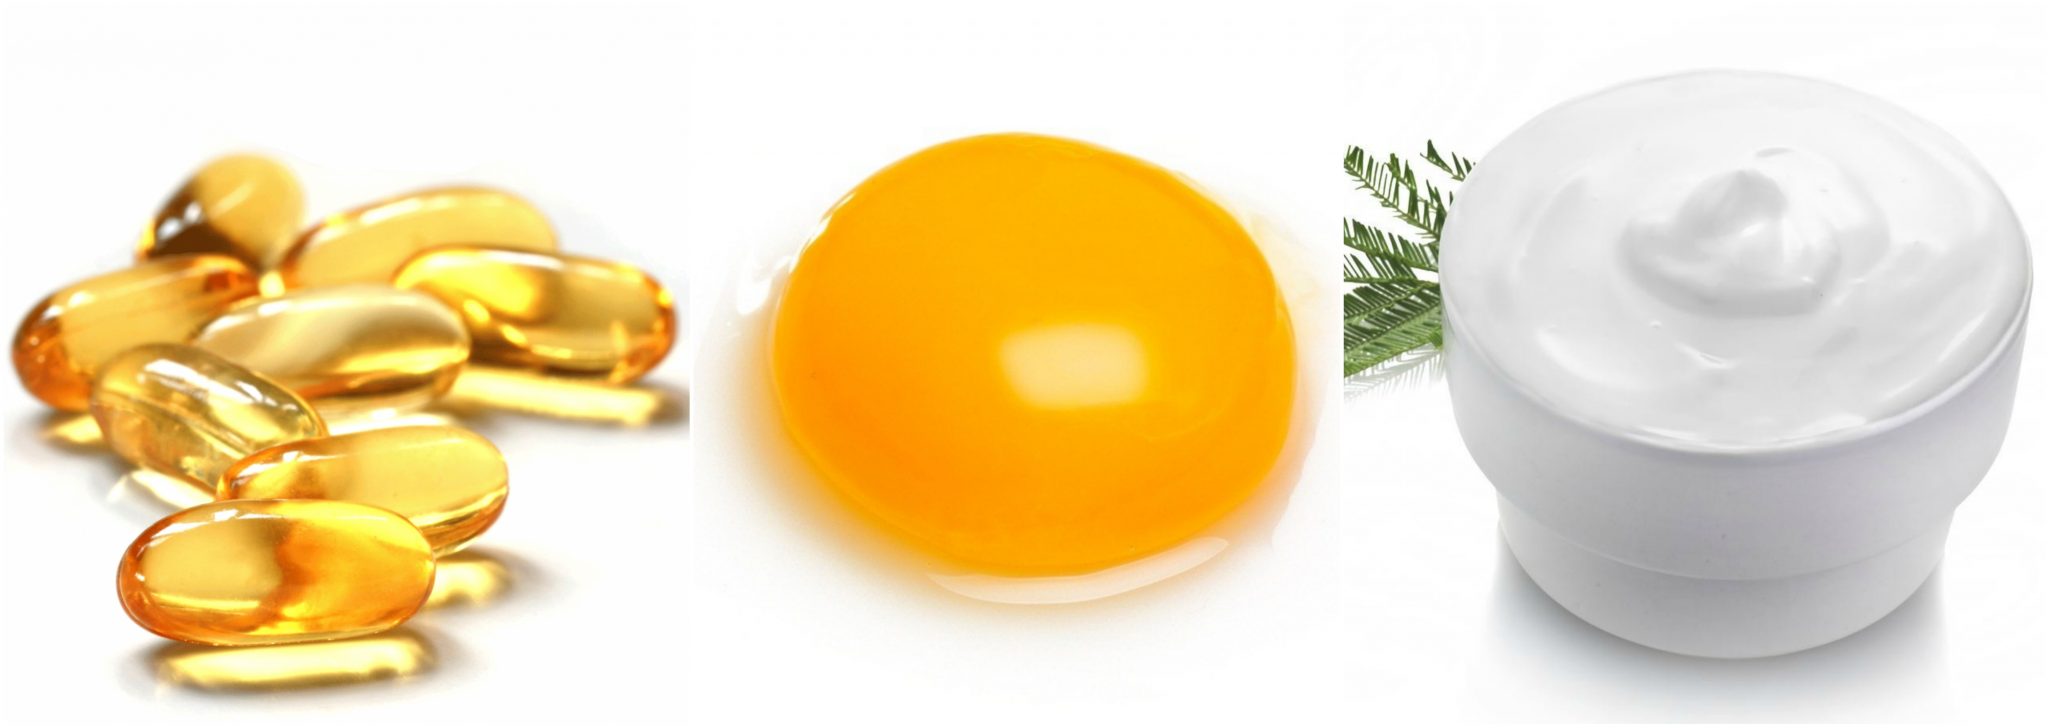 cách làm mặt nạ vitamin E với lòng đỏ trứng